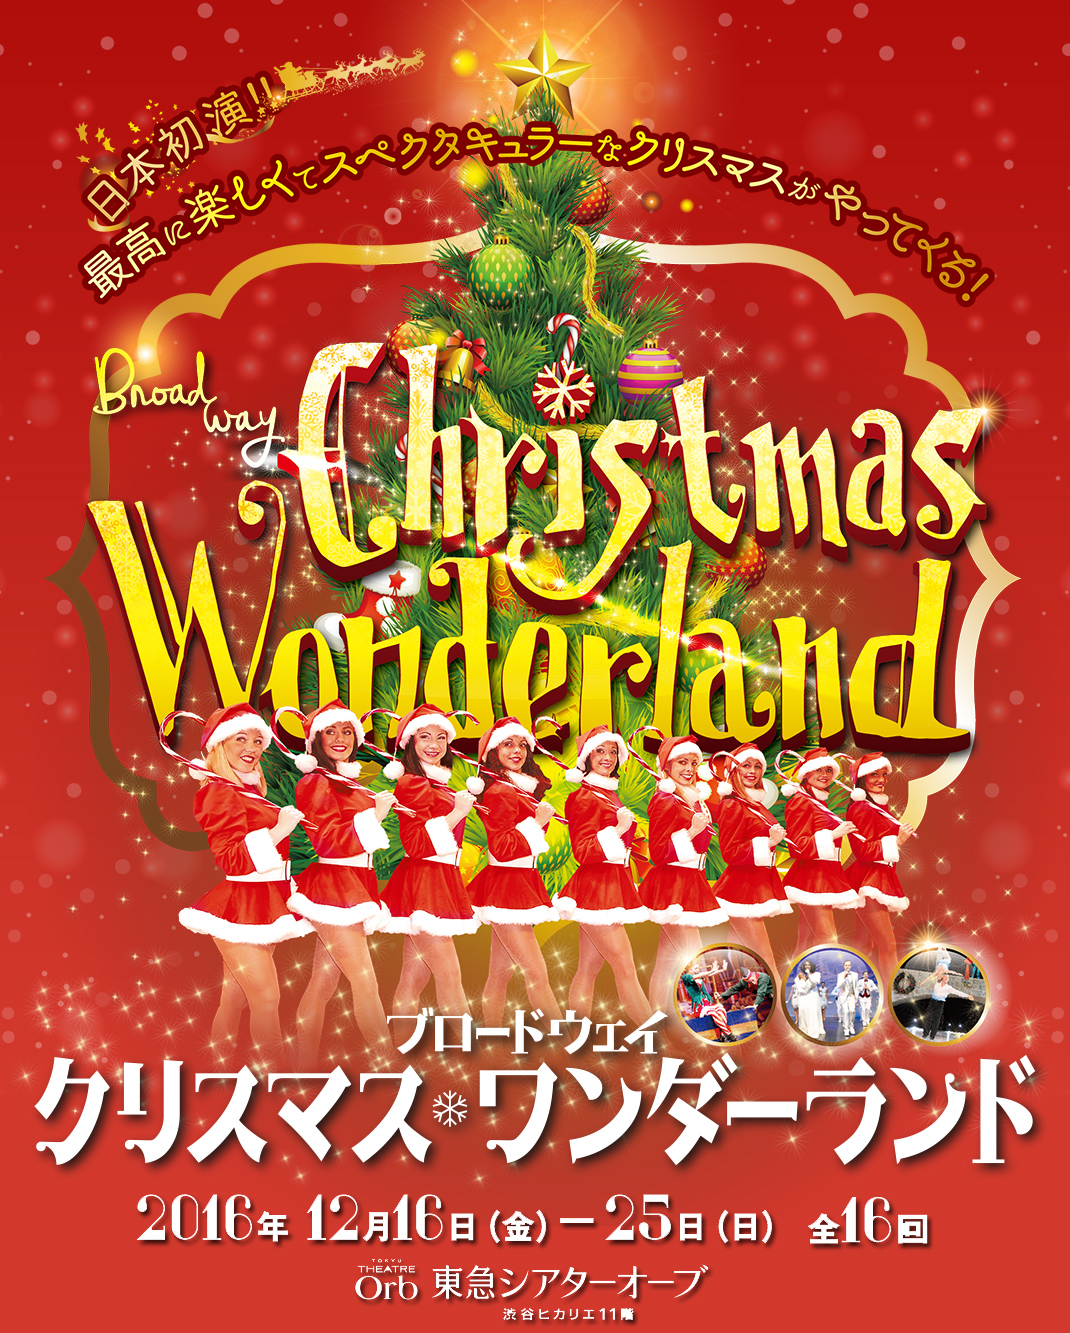 日本初演　最高に楽しくてスペキュタクラーなクリスマスショーがやってくる！ Bload way Chrismas Wonderland ブロードウェイ クリスマス・ワンダーランド 2016年12月16日(金)-25日(日) 全16回 東急シアターオーブ 渋谷ヒカリエ11階